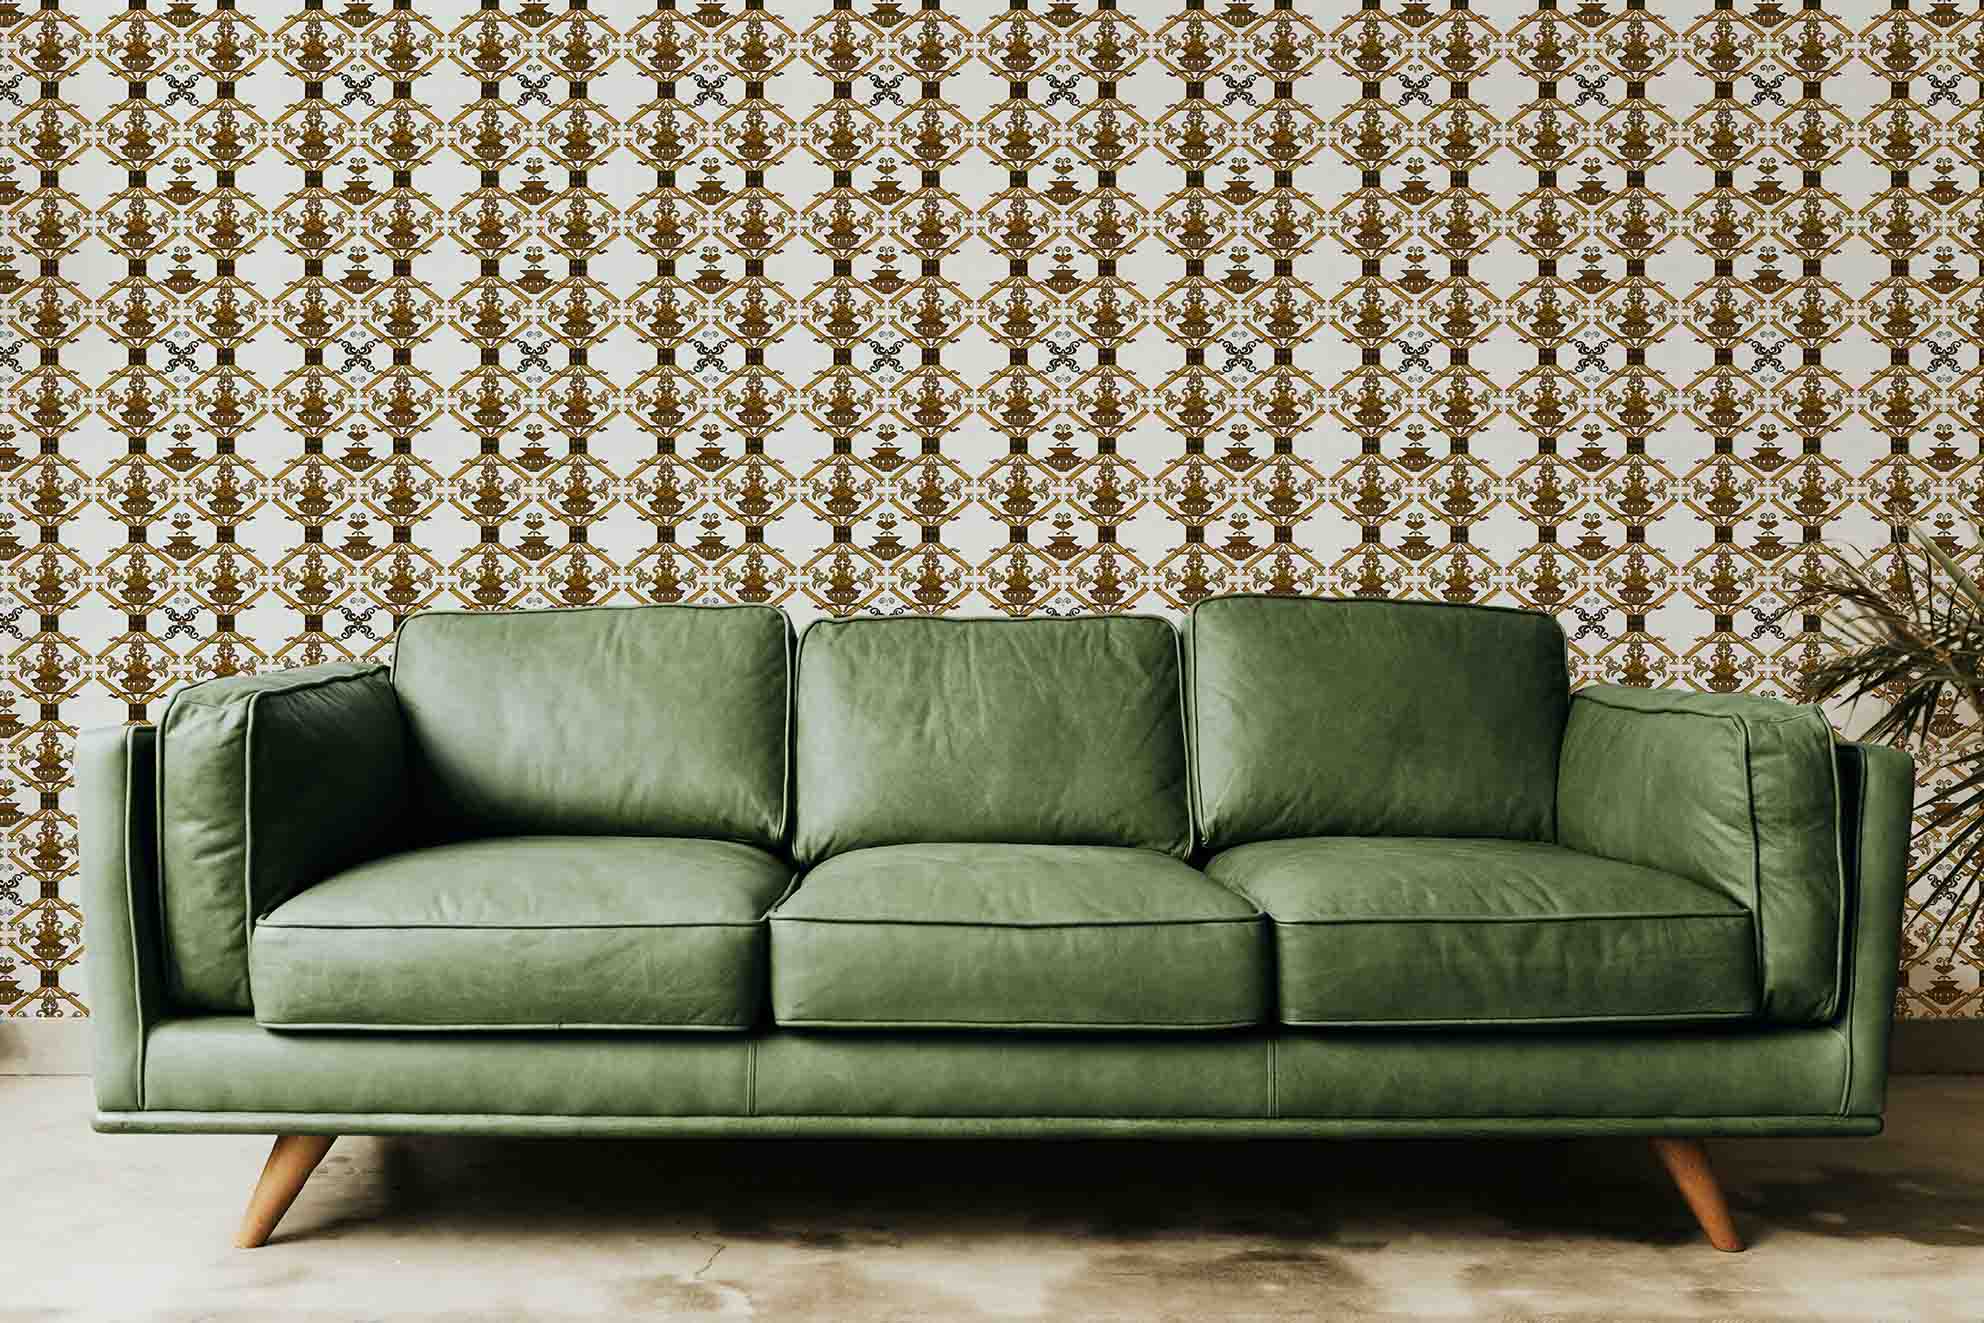 Wallpaper-Ricamo-Oro-antico-MaVoix-wallpaper-racconti-Interior-decor-back-couch